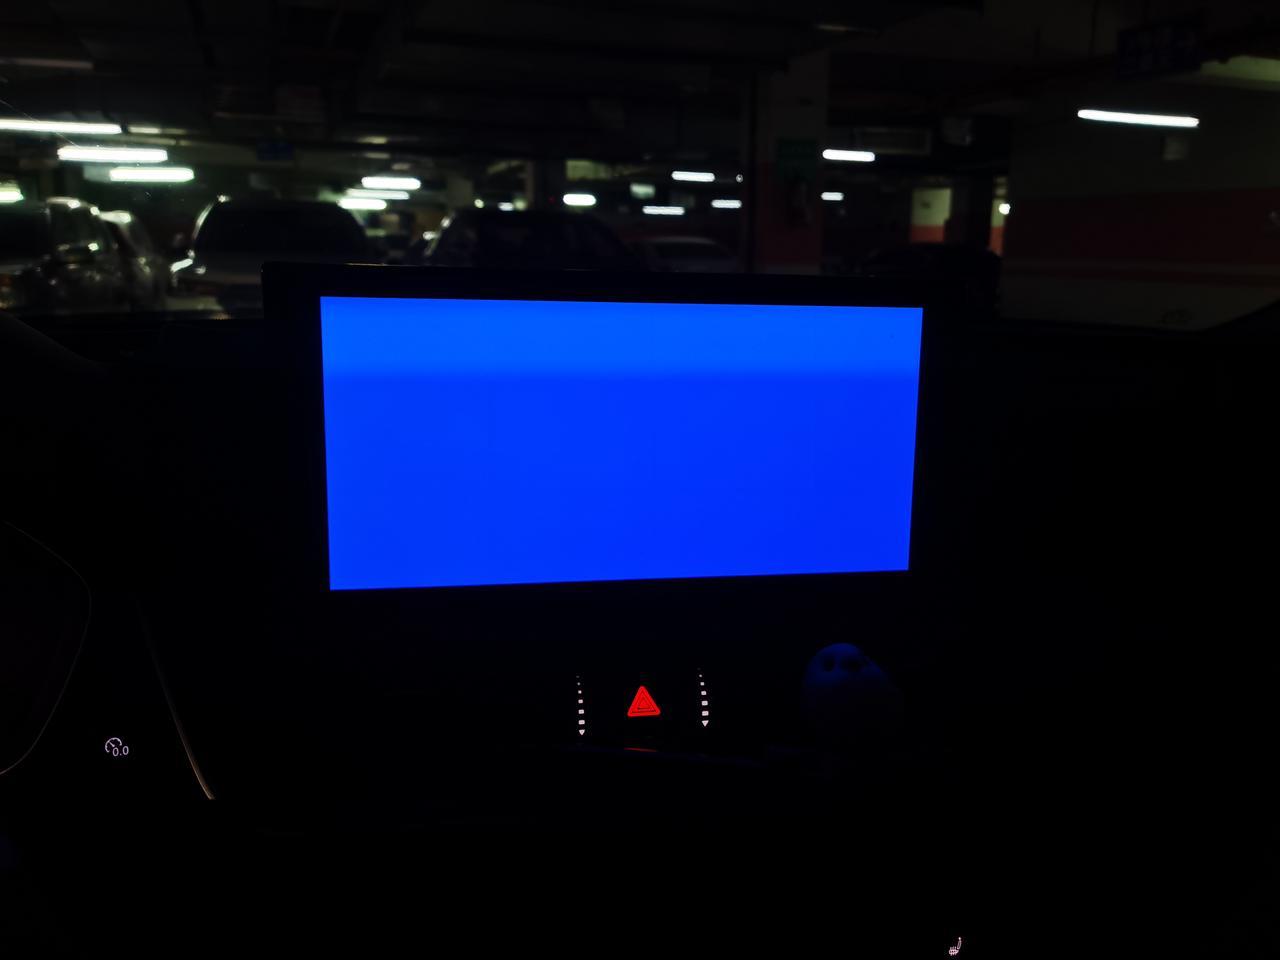 请问奥迪q5l中控蓝屏是怎么回事？完全熄火再重启，还是蓝屏，倒车时会自动显示，说明屏幕没有问题，也没有任何外部挤压，按捏。